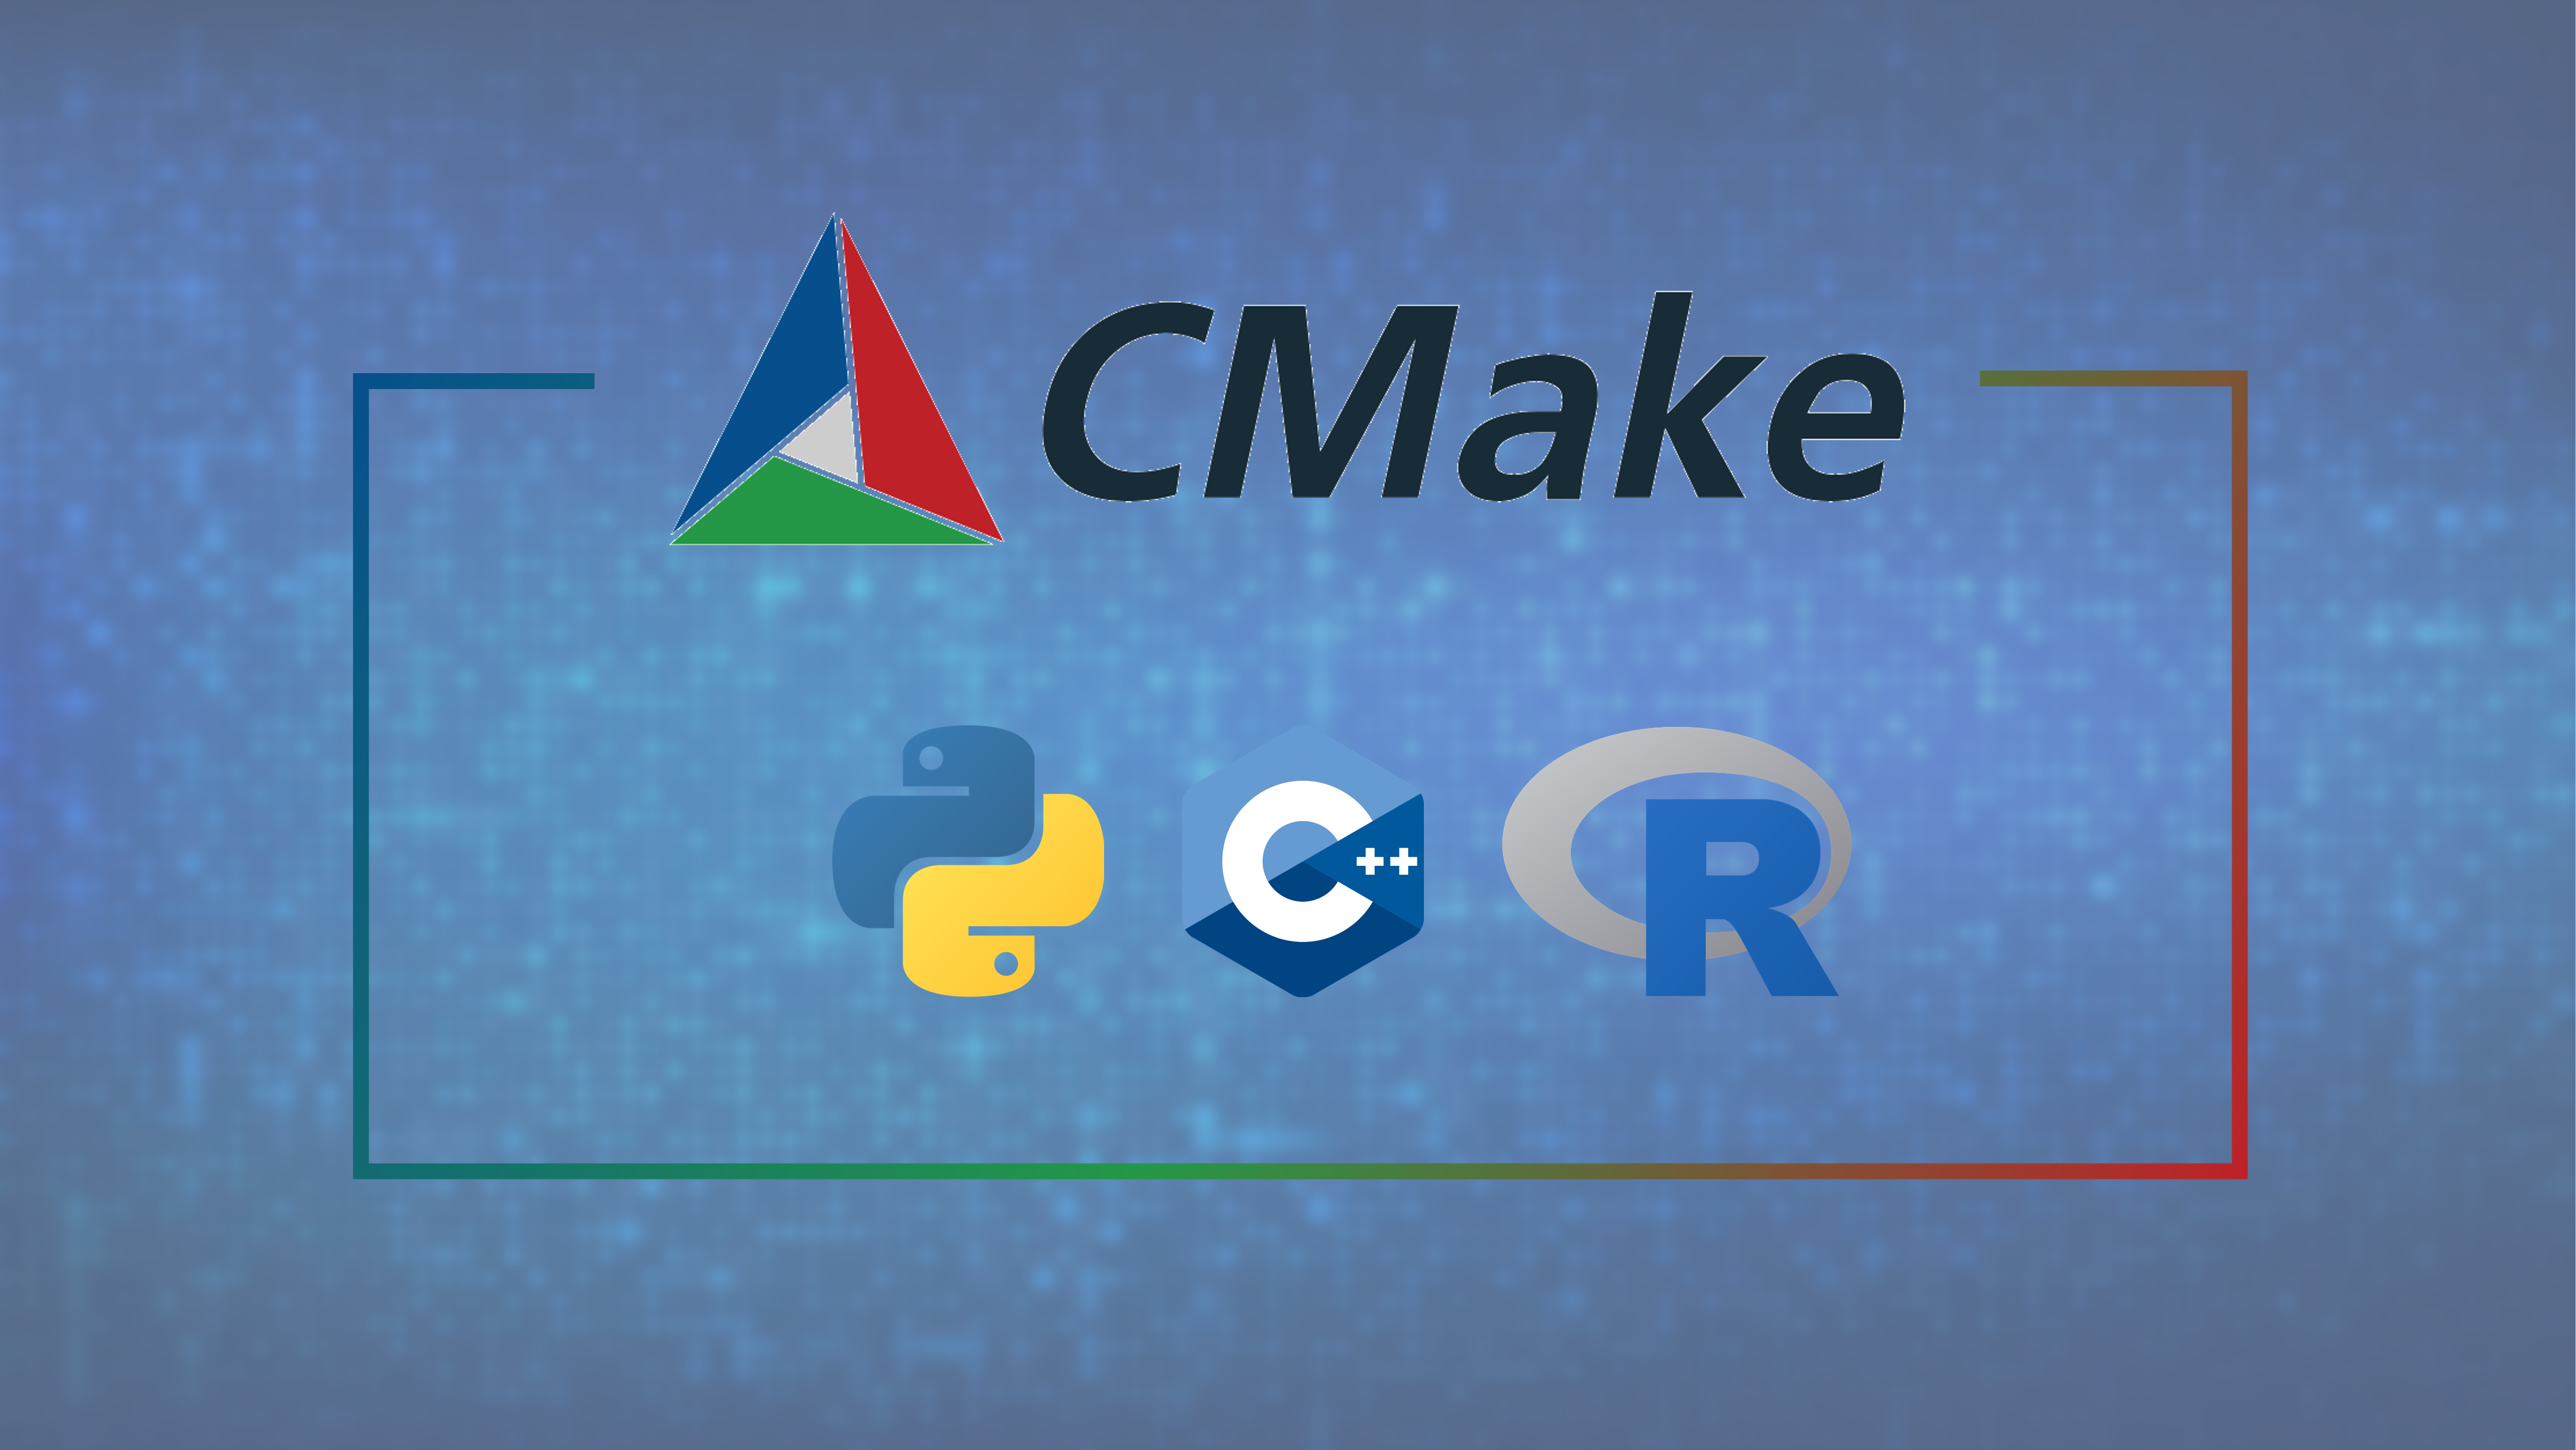 使用 CMake 统一管理并编译 C++/Python/R 算法包